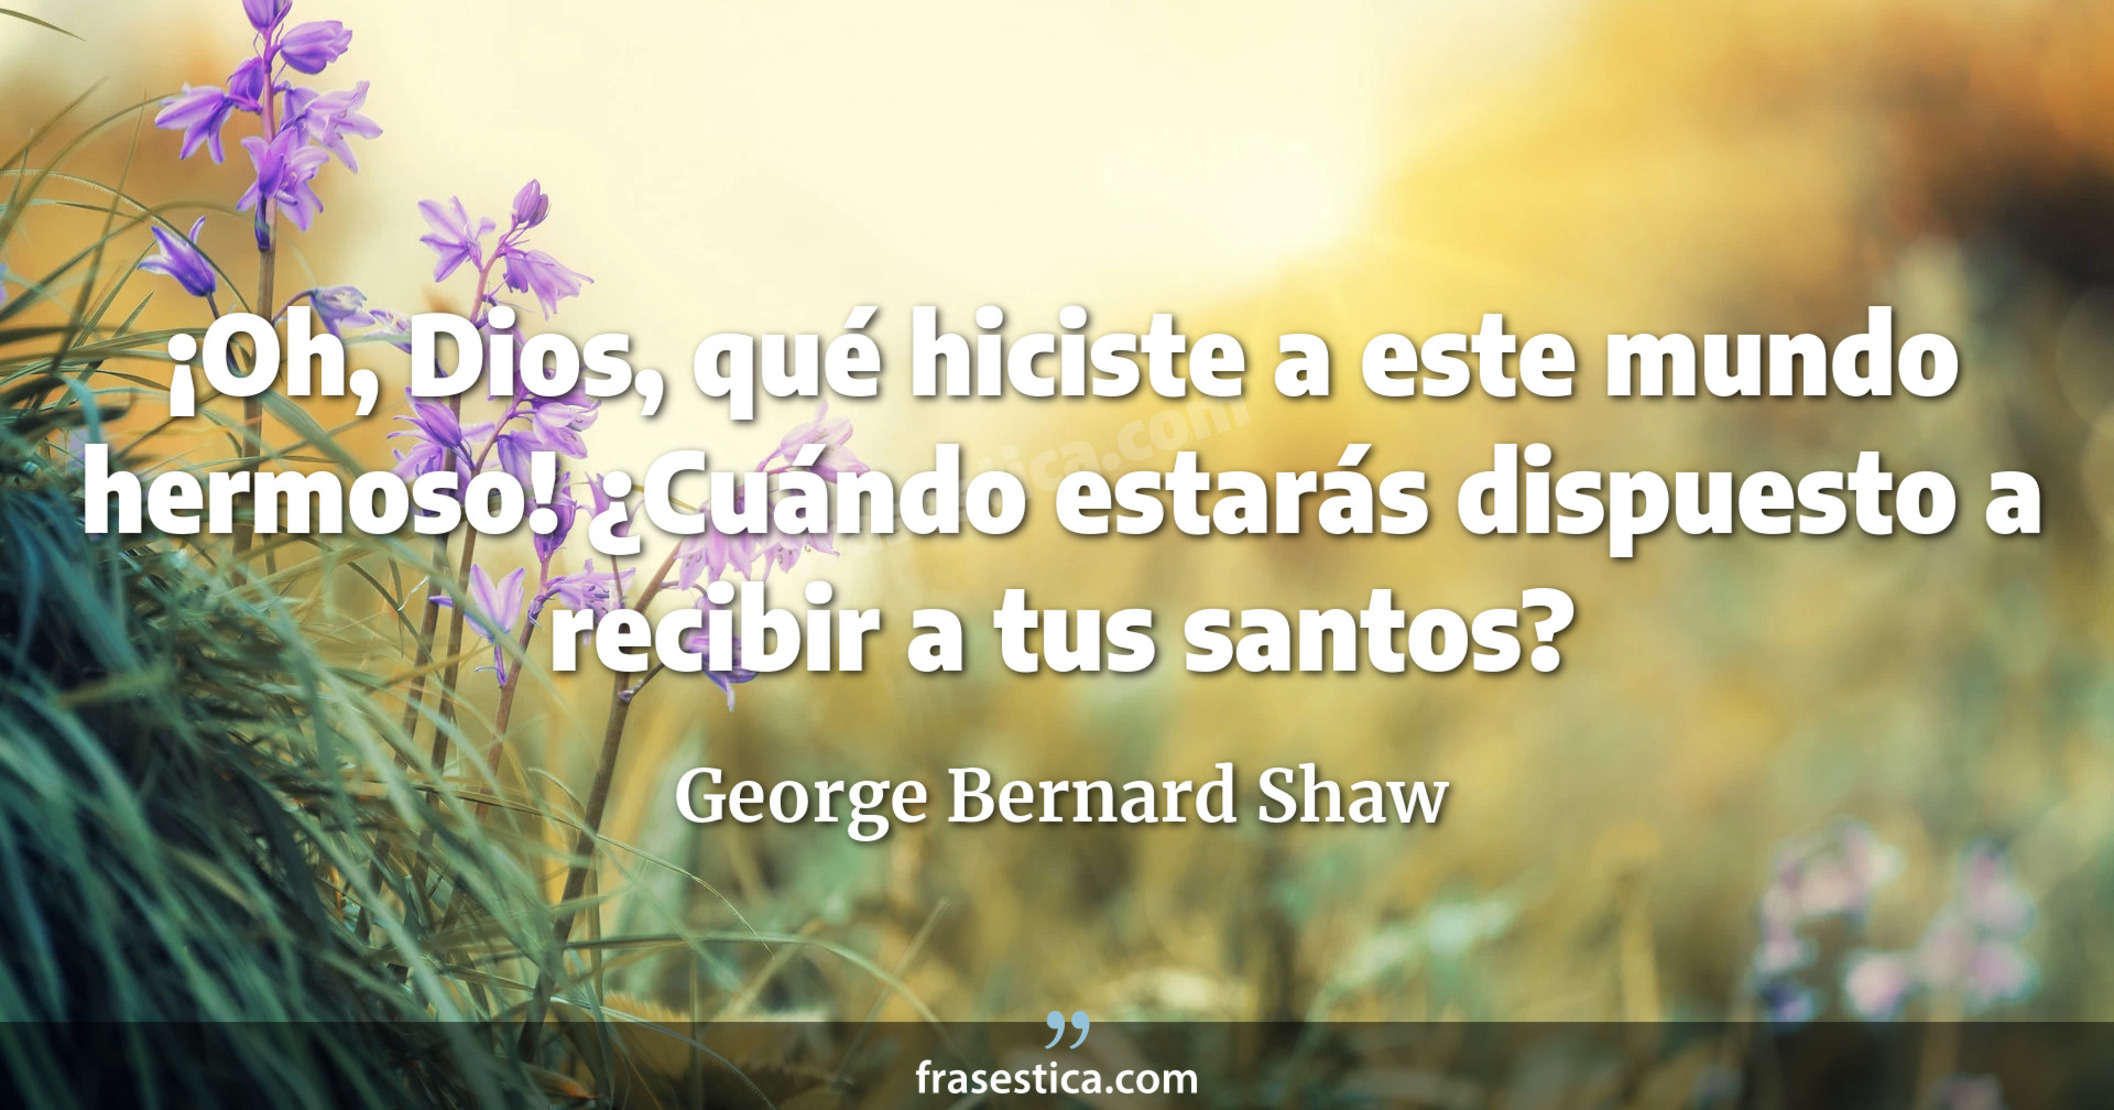 ¡Oh, Dios, qué hiciste a este mundo hermoso! ¿Cuándo estarás dispuesto a recibir a tus santos? - George Bernard Shaw